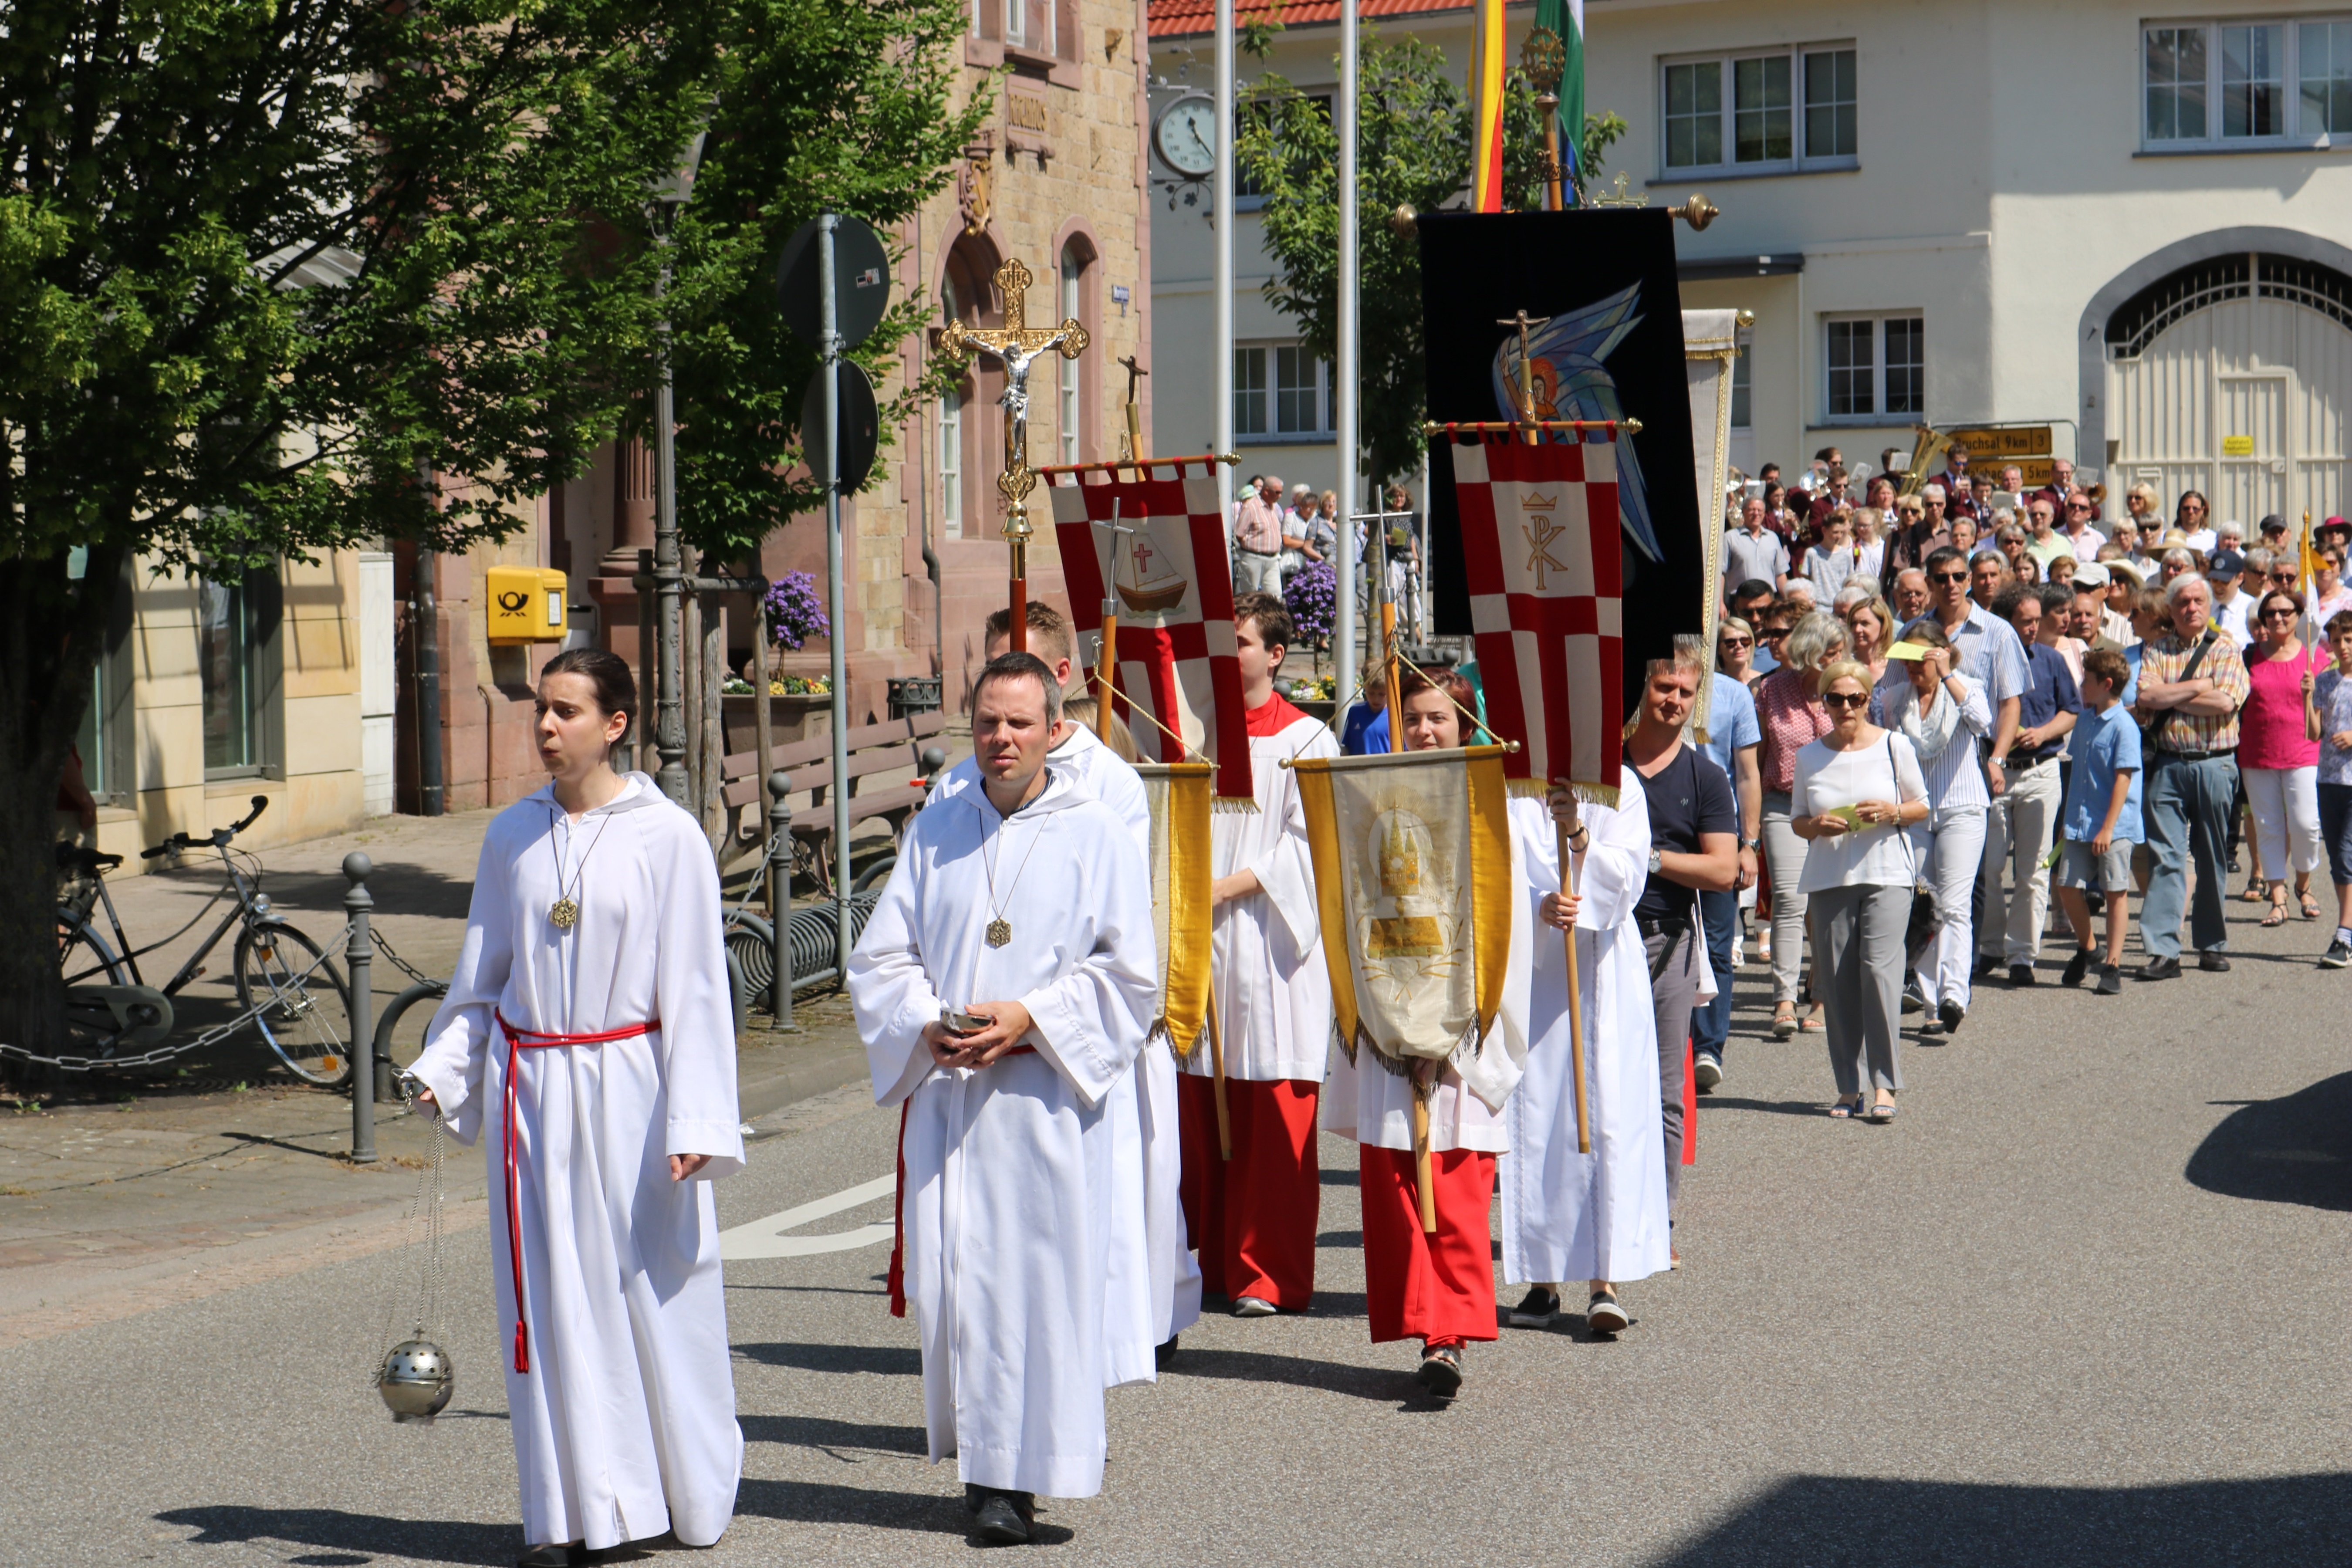  Die Prozession beginnt am Rathausplatz und führt zur katholischen Kirche 